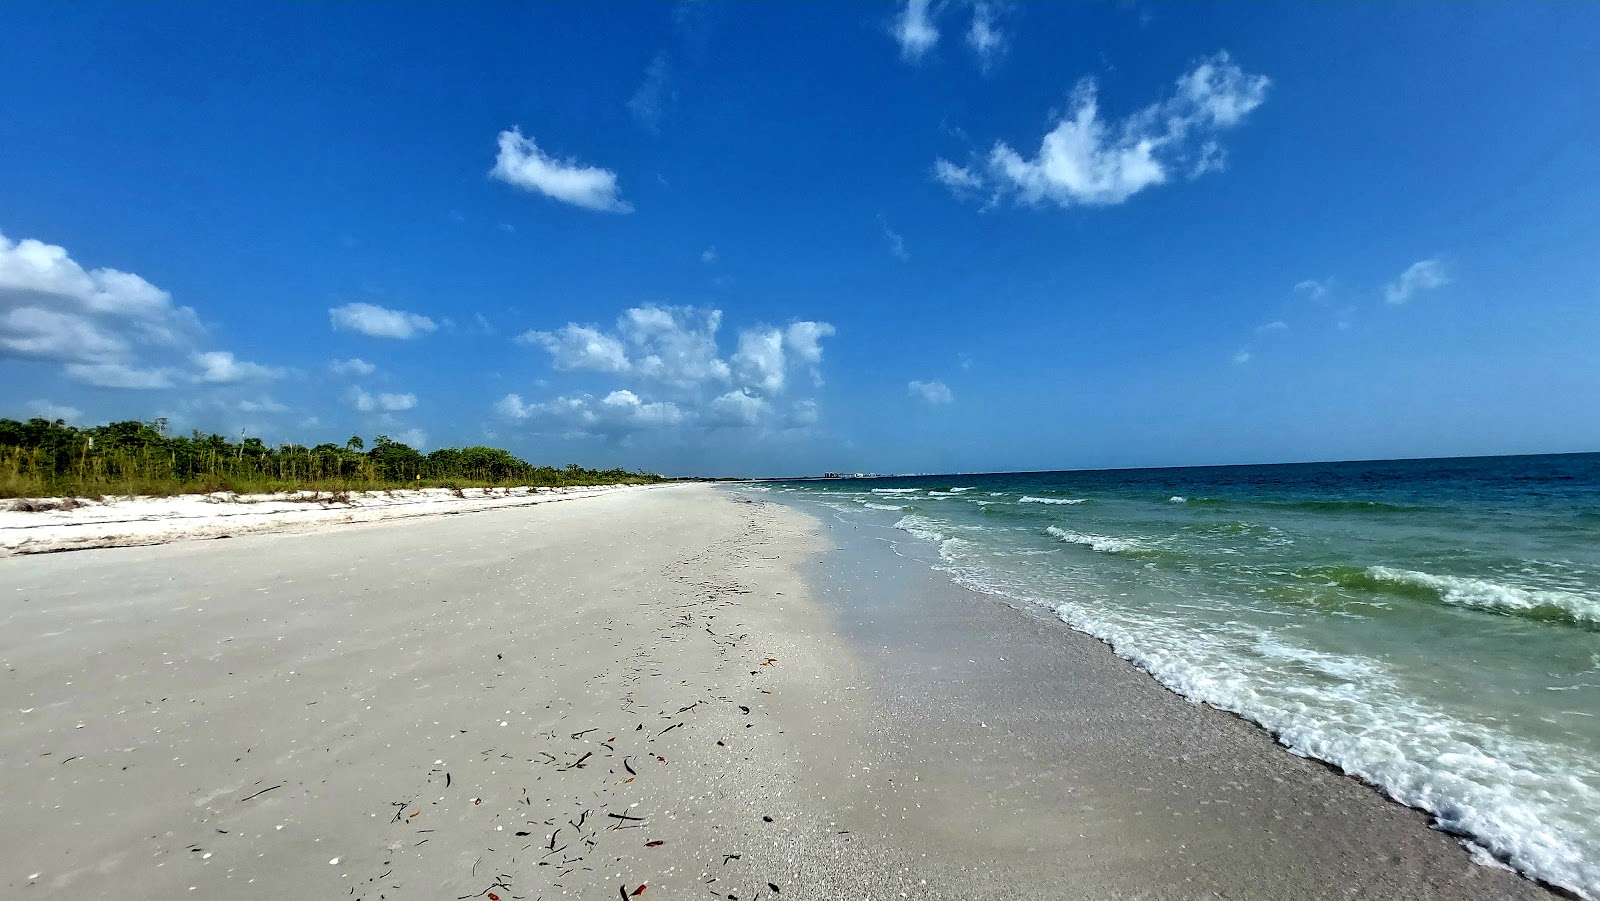 Fotografie cu Bonita beach - locul popular printre cunoscătorii de relaxare